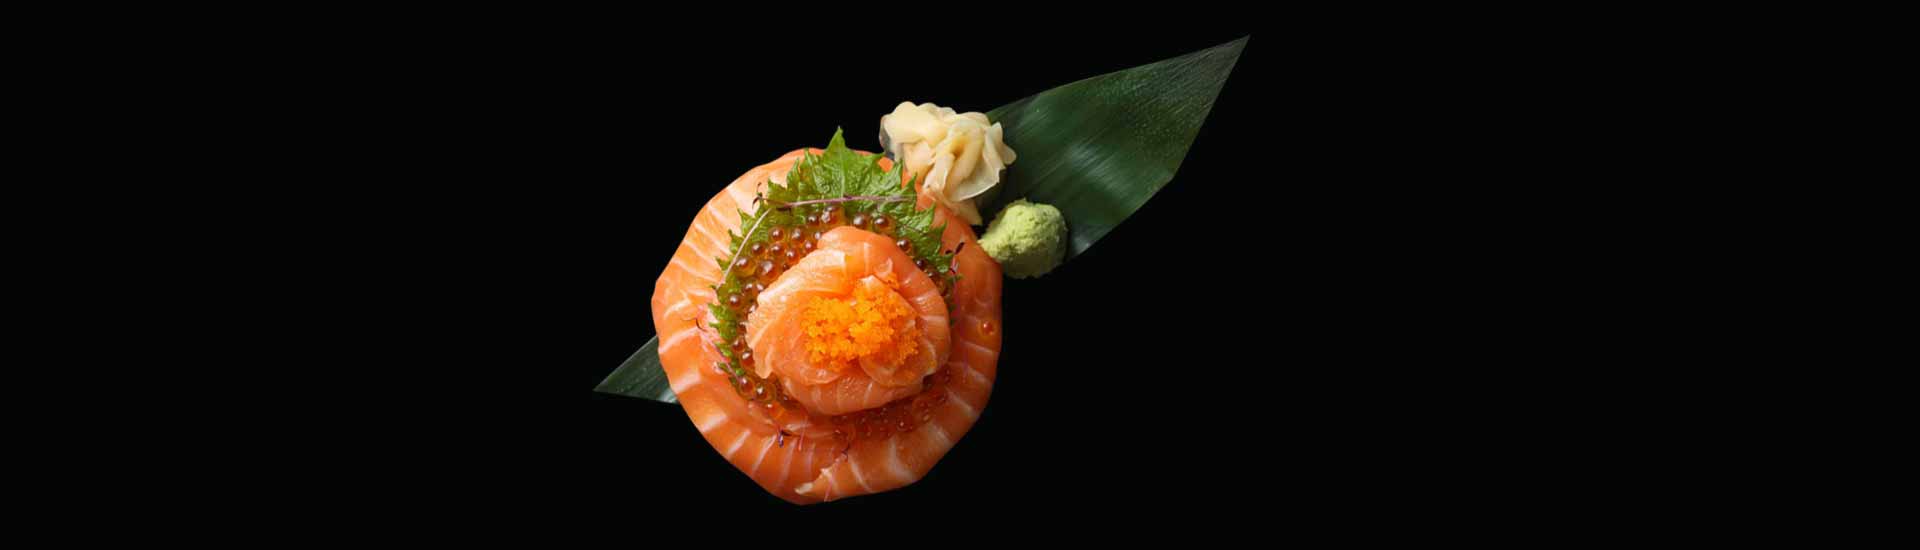 Sushi-lunch-set